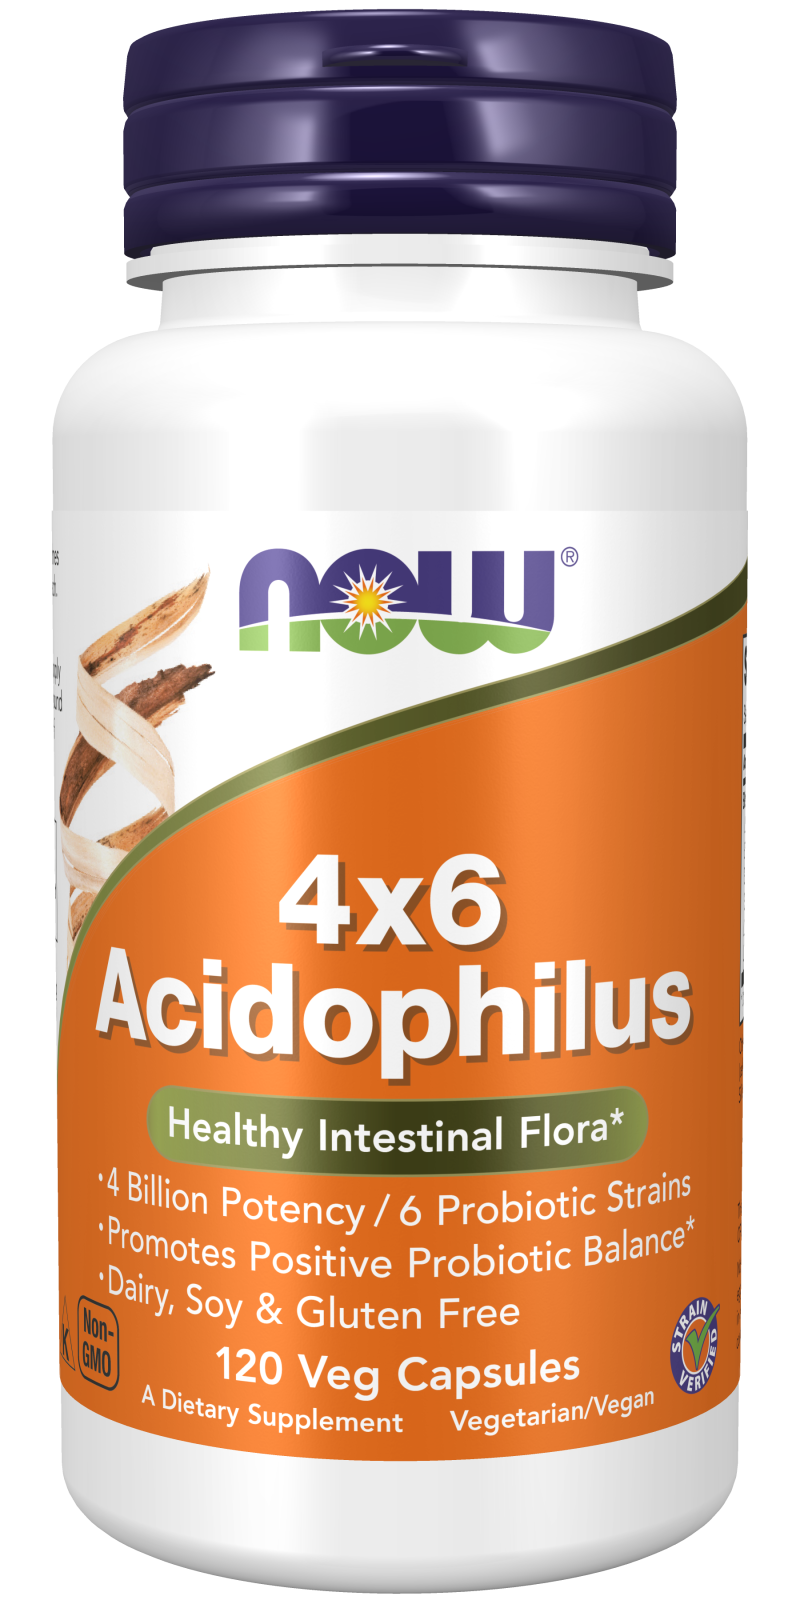 Acidophilus 4x6 - 120 Veg Capsules